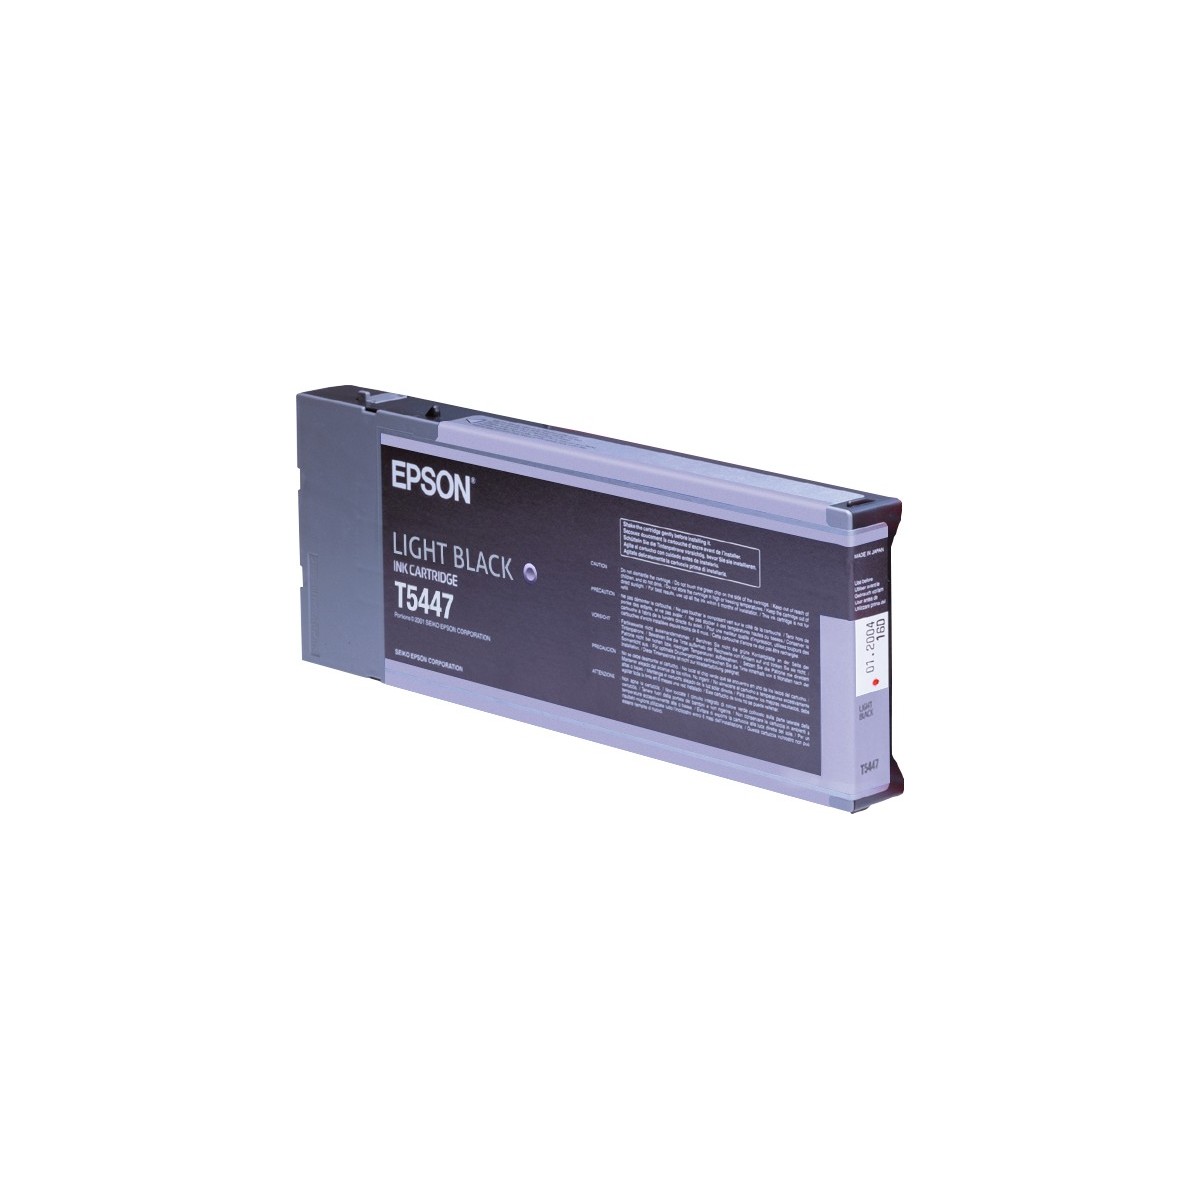 Epson Singlepack Light Black T544700 220 ml - Pigment-based ink - 220 ml - 1 pc(s)